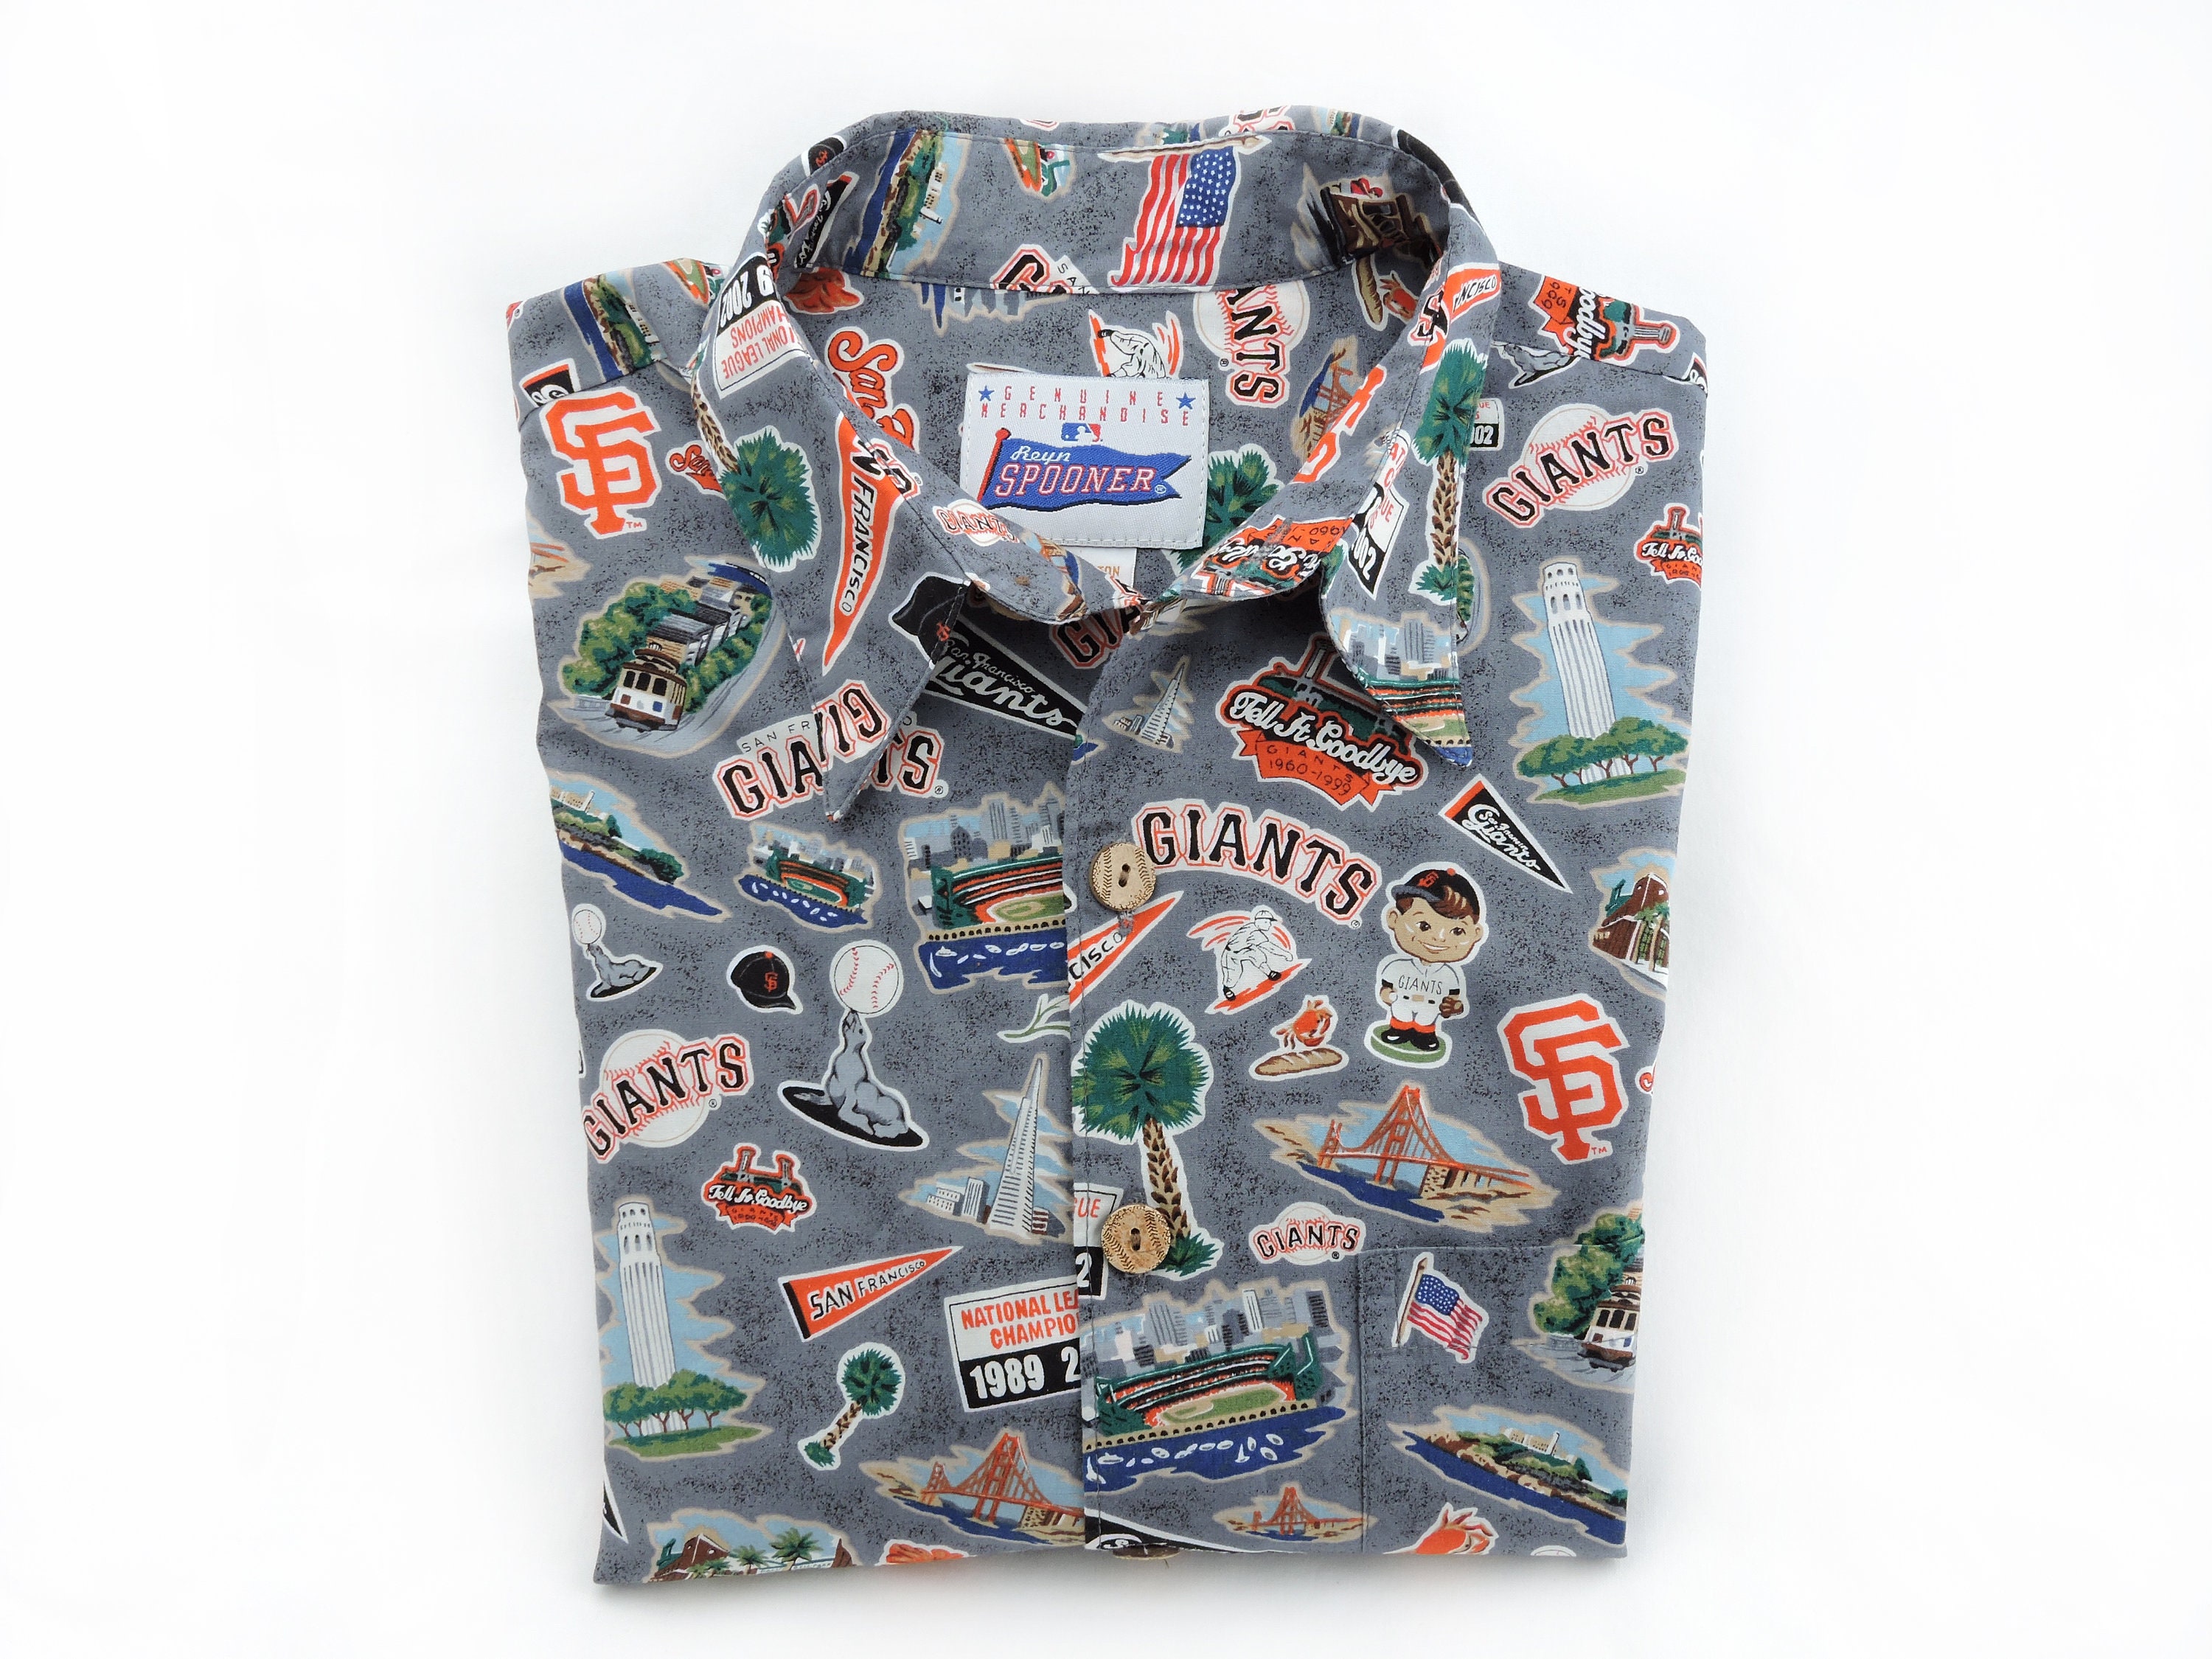 Vintage 2002 San Francisco Giants Reyn Spooner Hawaiian Shirt -  Israel